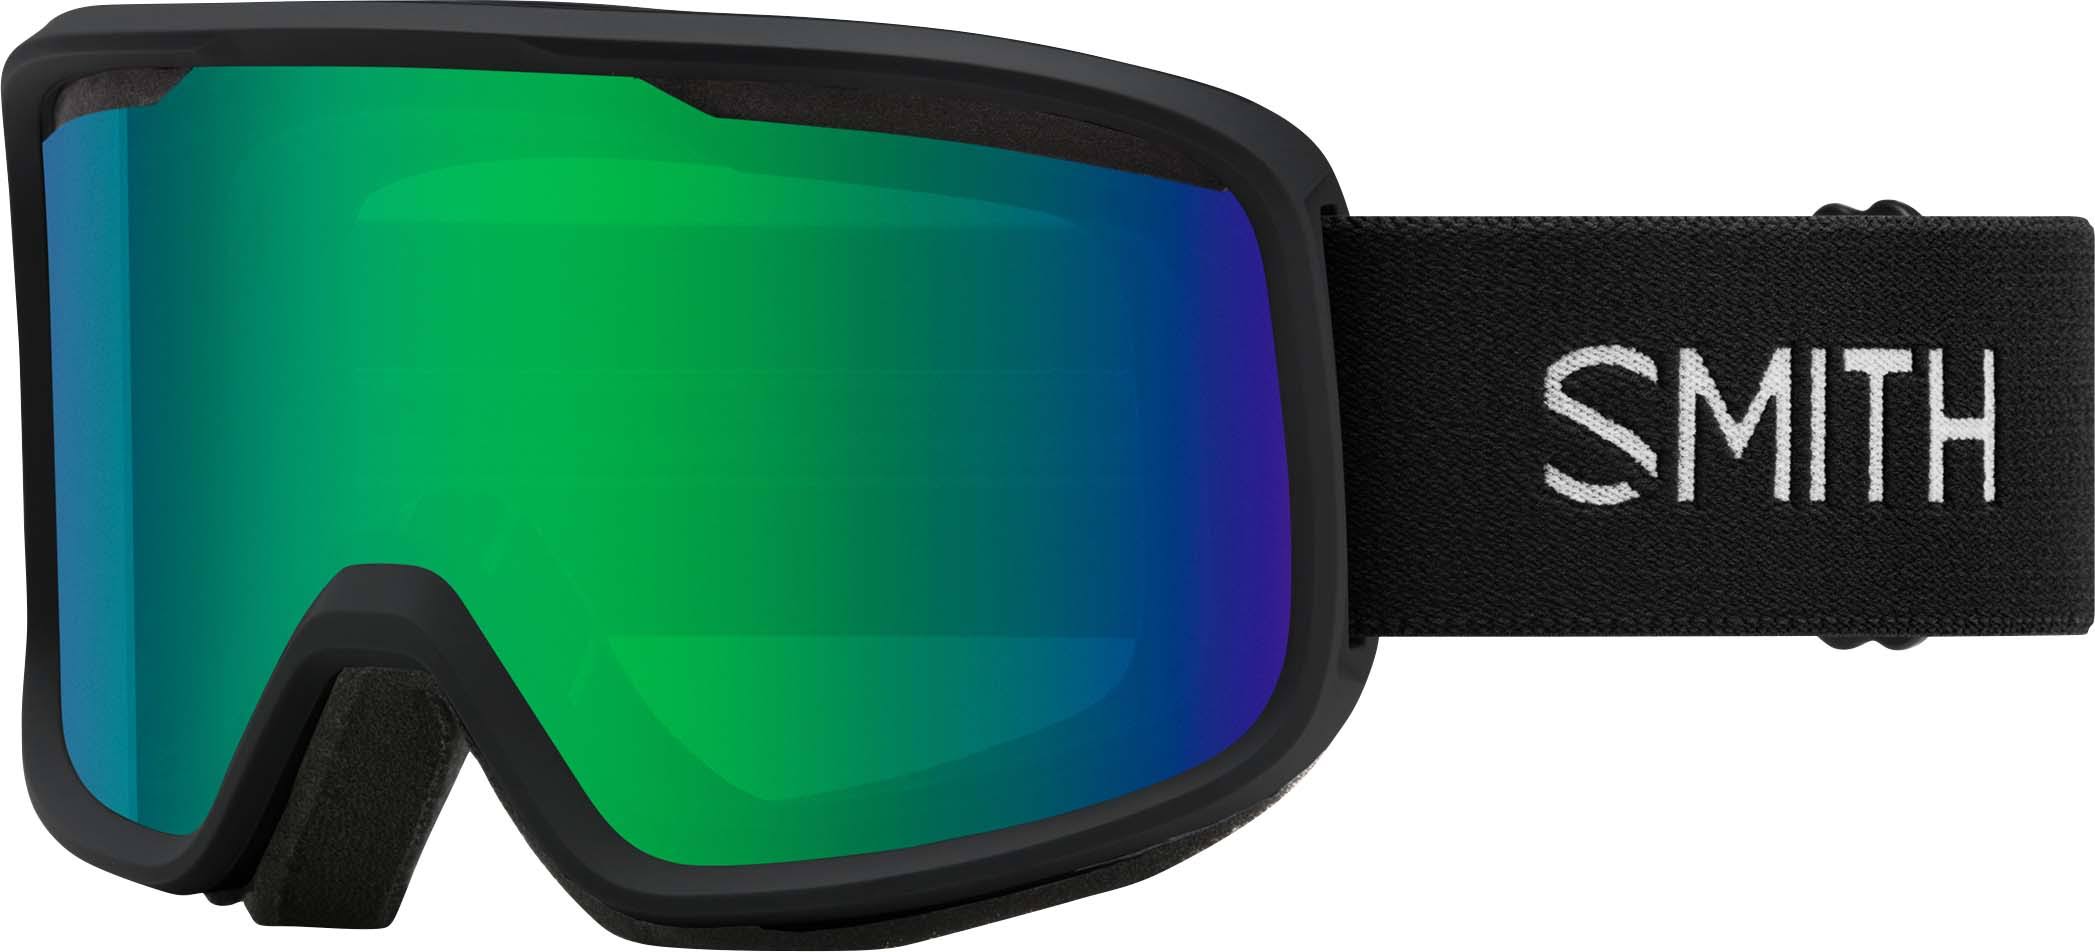 Smith Frontier Goggles Black Green Sol-X Mirror M004292QJ99C5